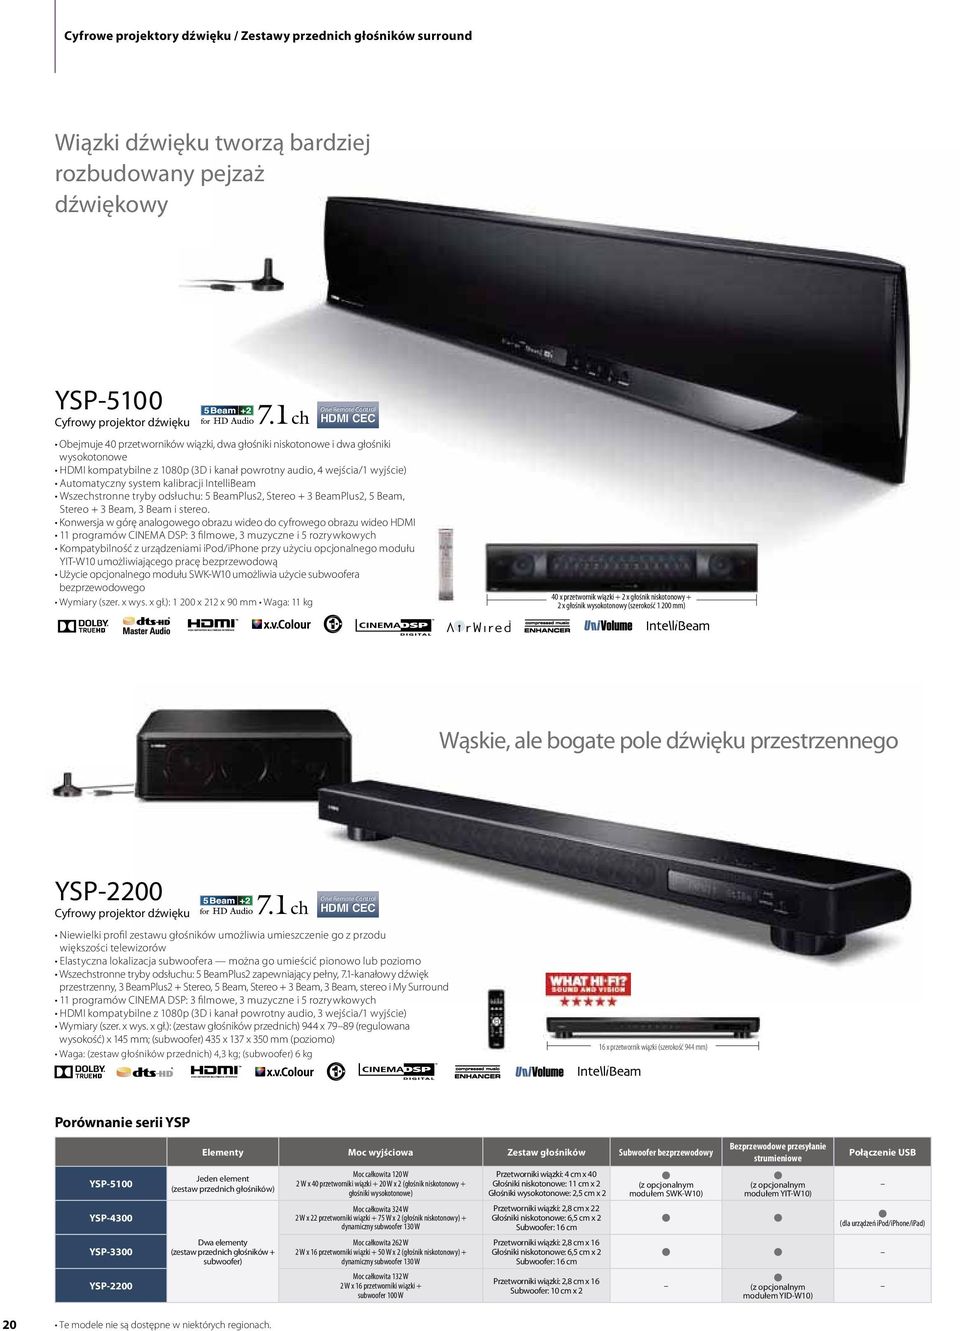 projektor dźwięku One Remote Control HDMI CEC większości telewizorów 16 x przetwornik wiązki (szerokość 944 mm) Porównanie serii YSP YSP-5100 YSP-4300 YSP-3300 YSP-2200 Elementy Moc wyjściowa Zestaw